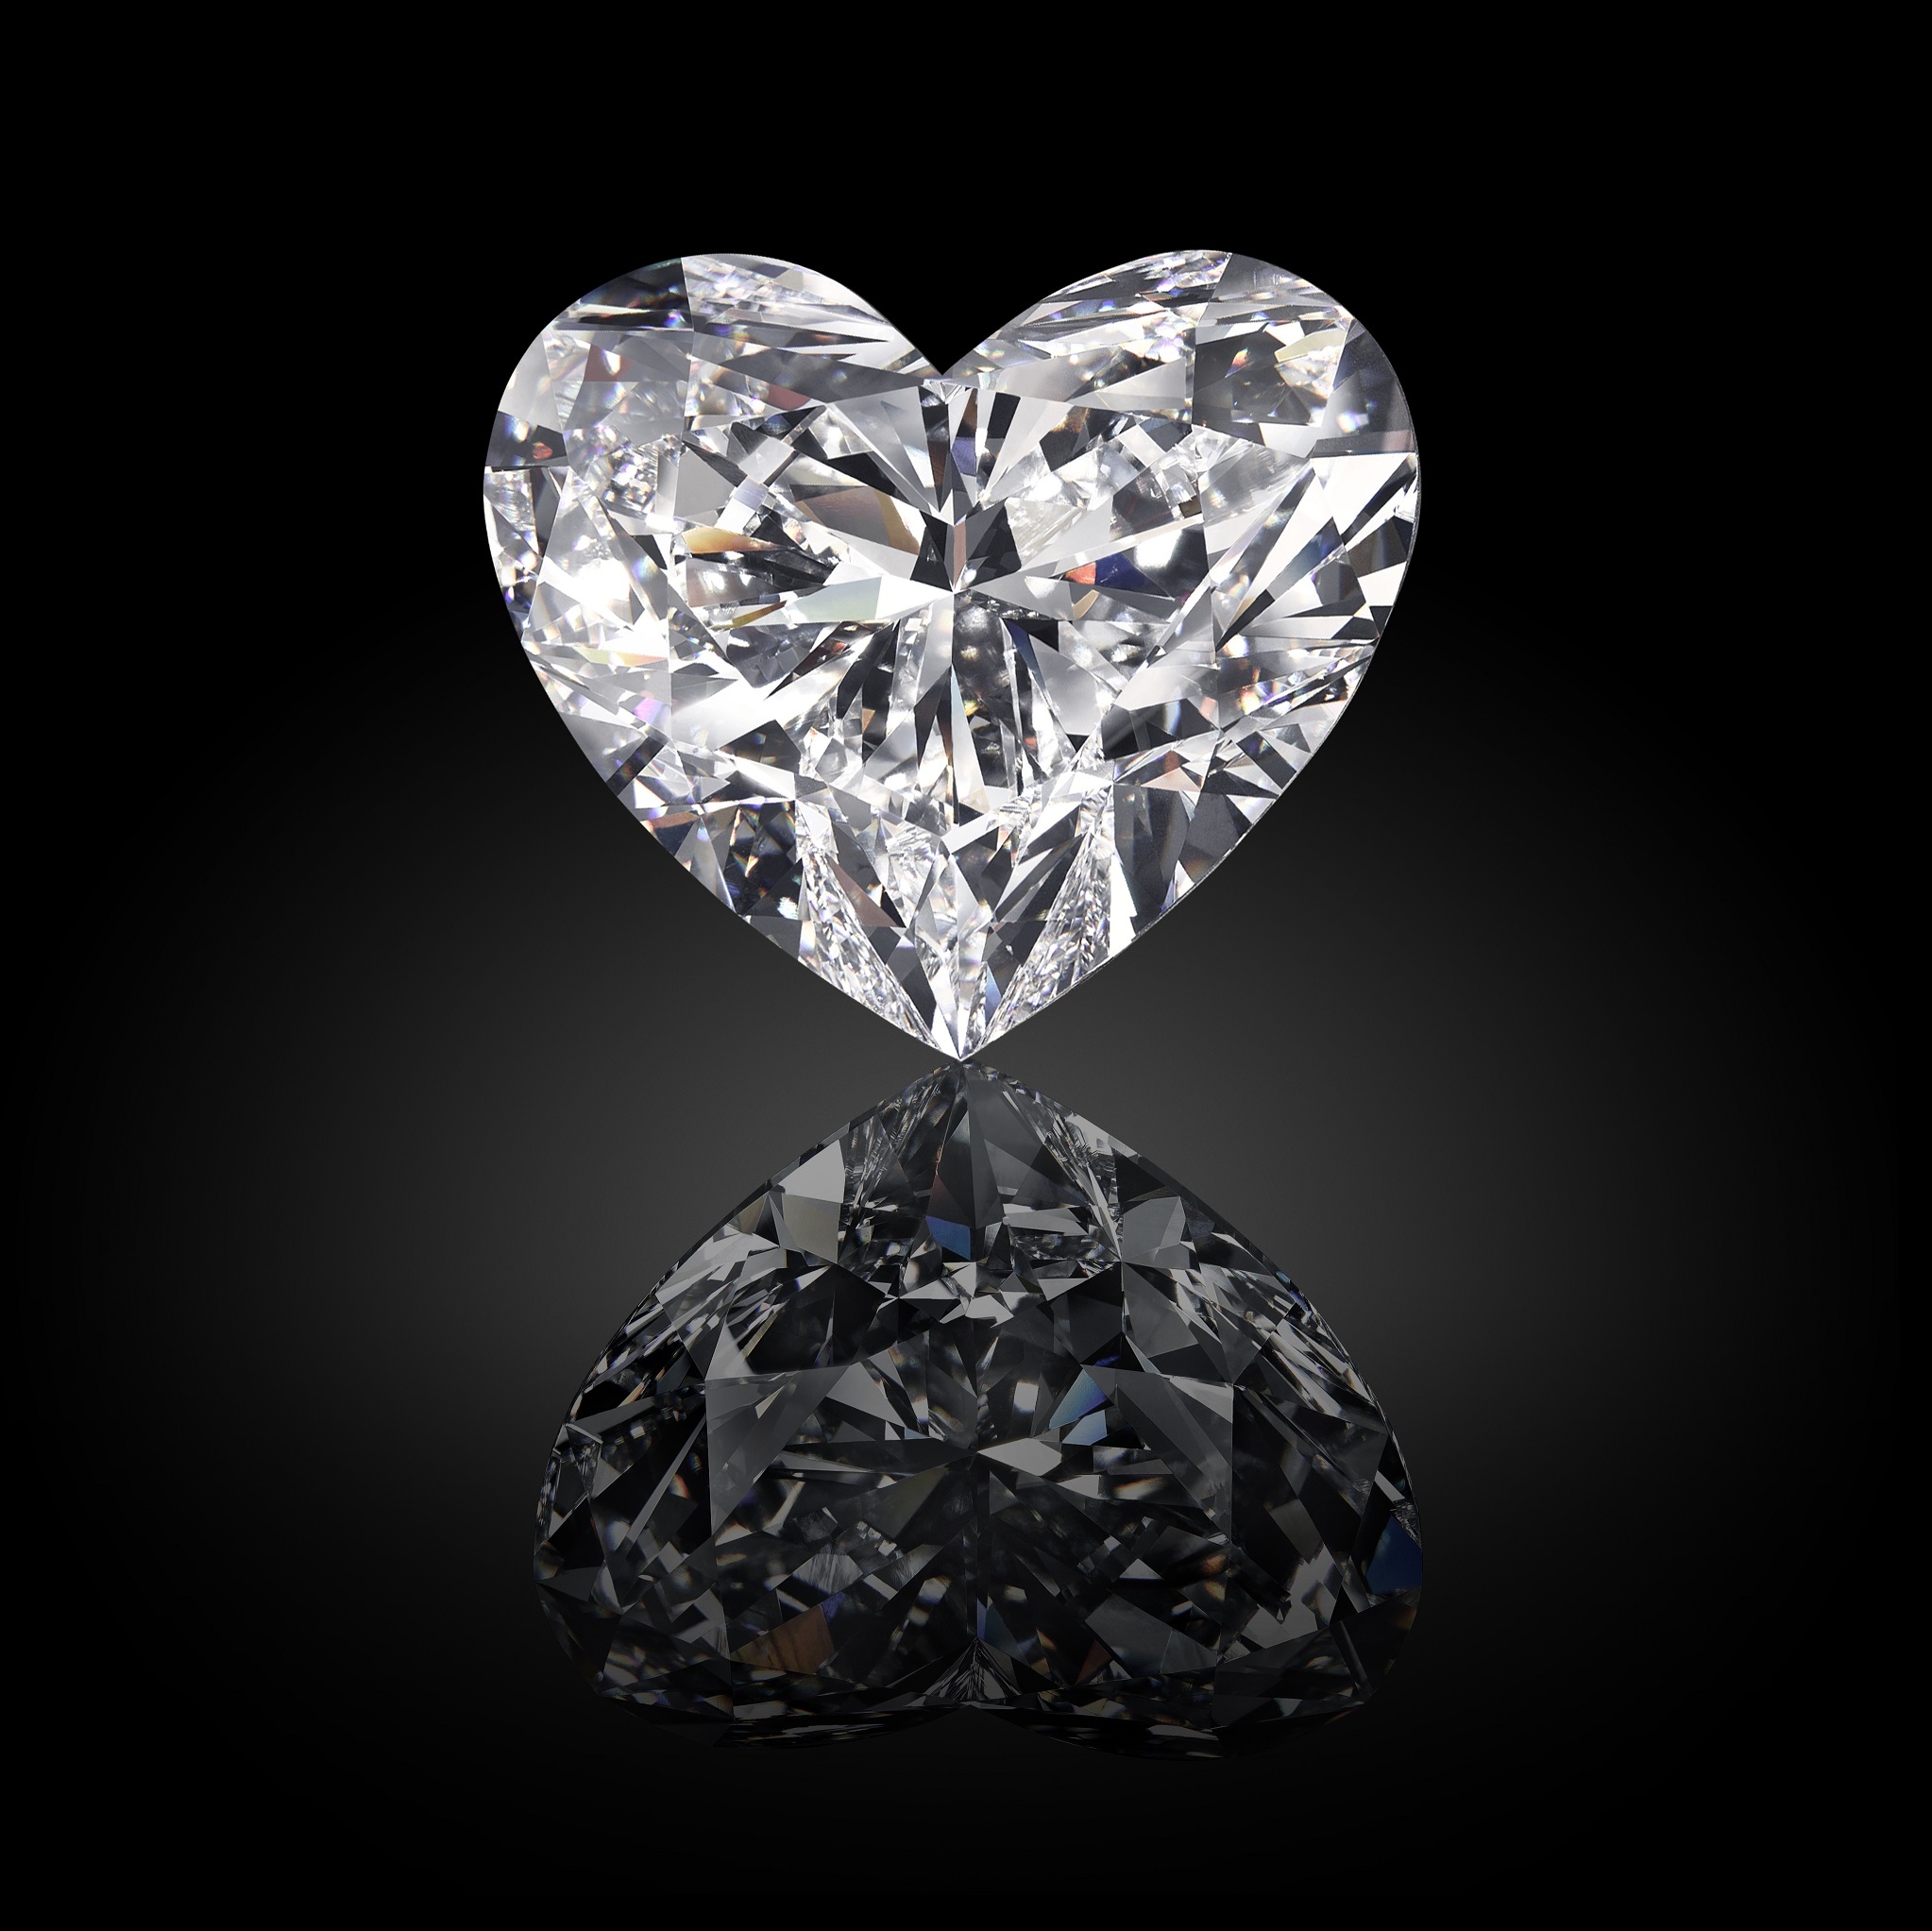 歴史に残る史上2番目 世界最大級のダイヤモンド原石 1 109カラット ザ レセディ ラ ロナ 世界に先駆け日本初上陸 Graff Diamonds Japan株式会社のプレスリリース